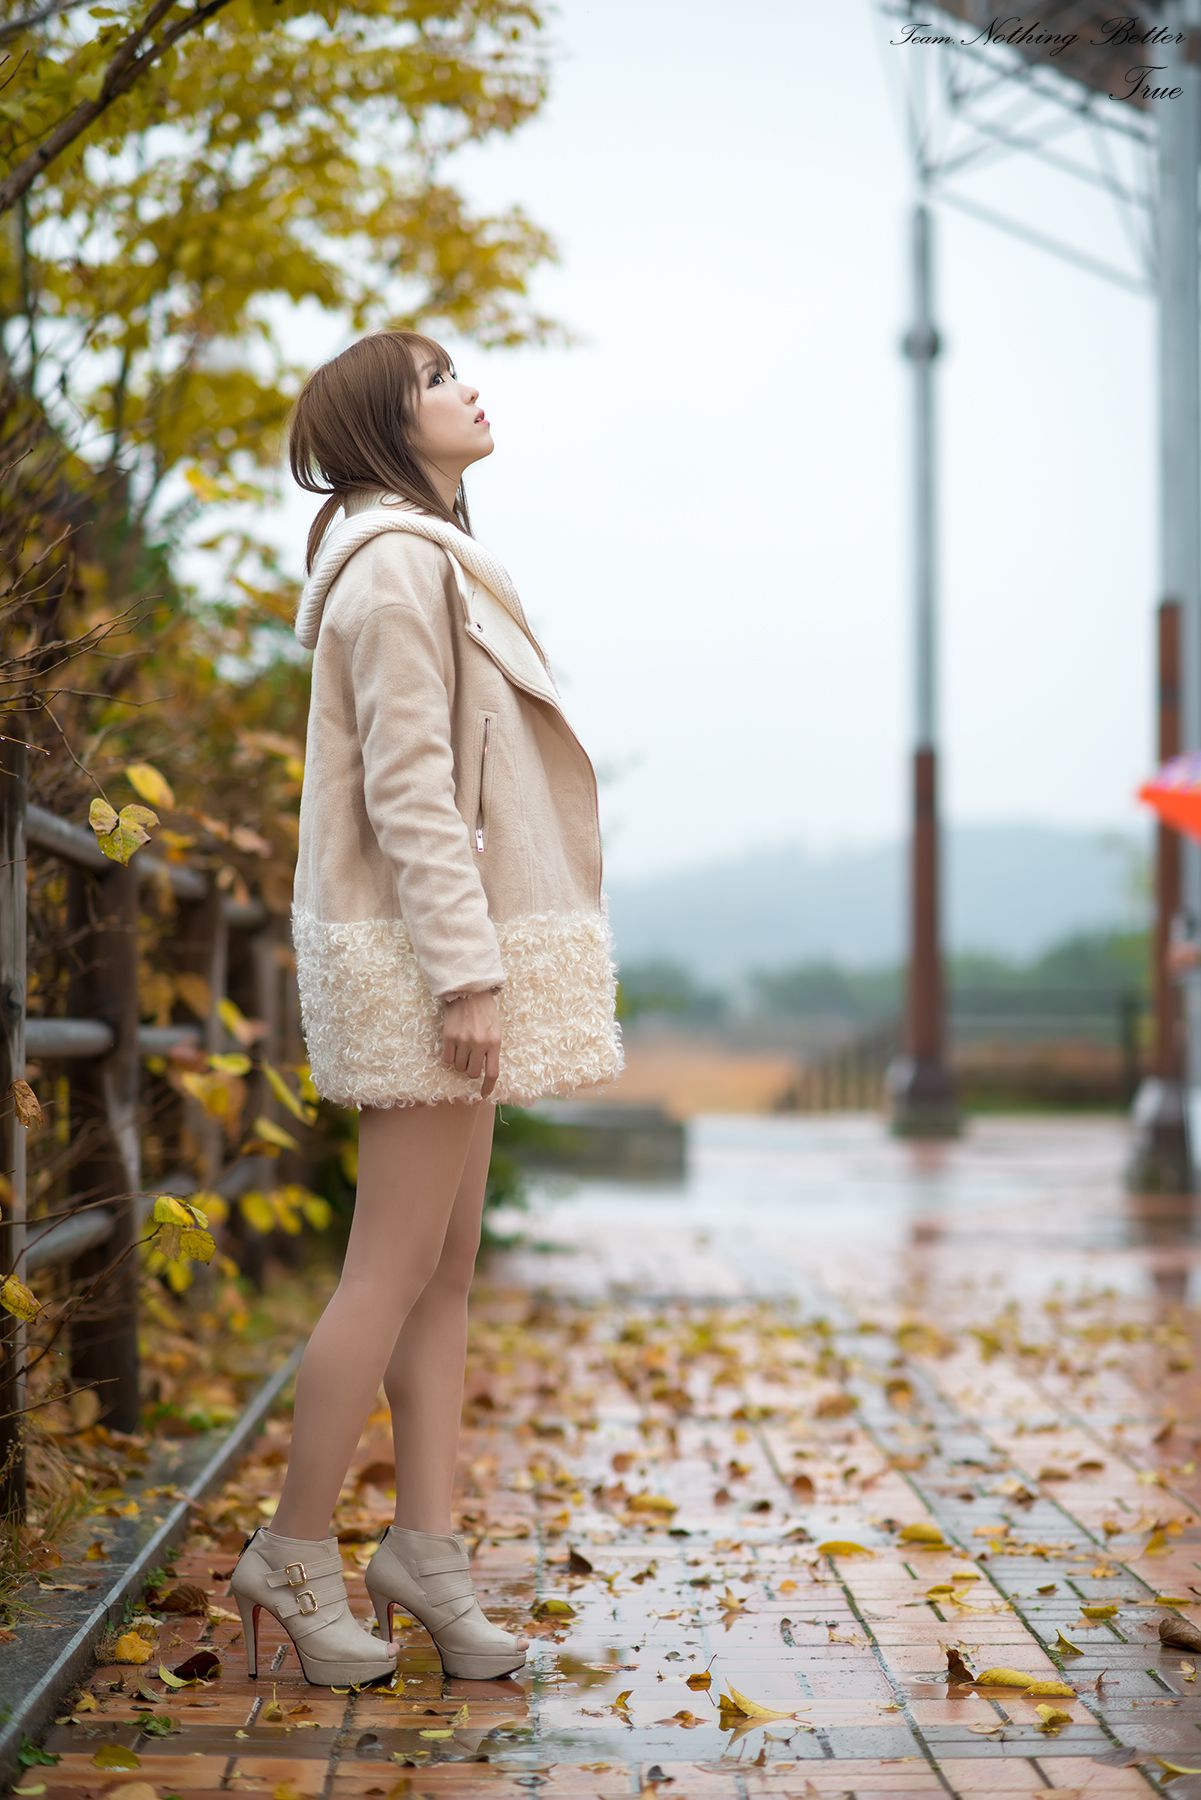 VOL.250 极品韩国美女李恩慧《下雨天街拍》高品质个人时尚写真作品